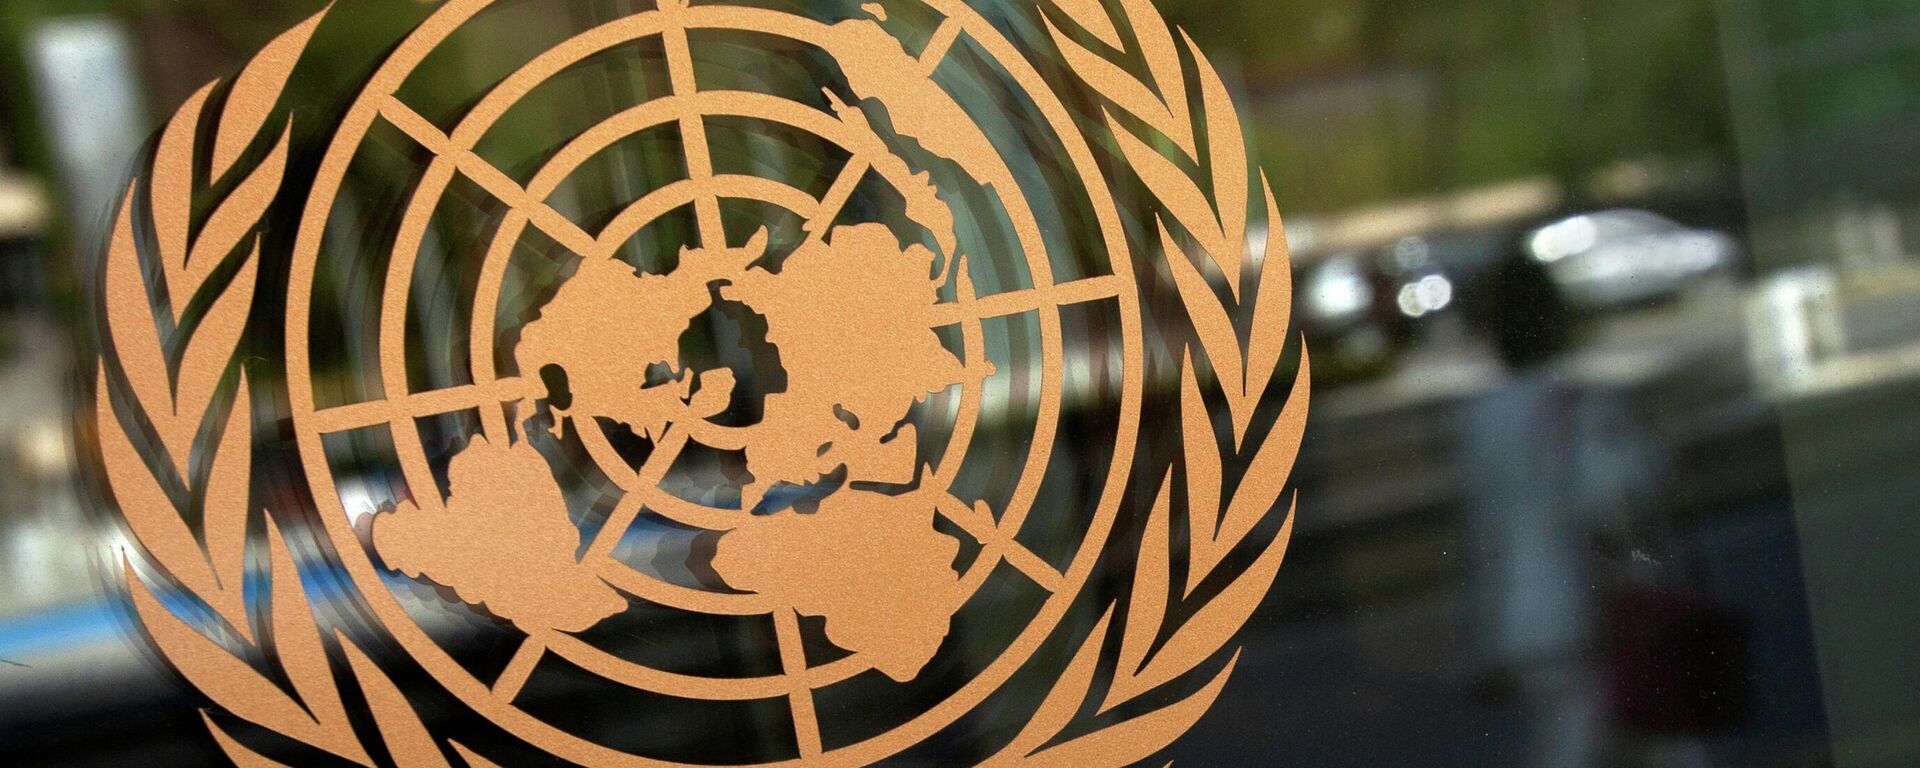 El logo de la ONU - Sputnik Mundo, 1920, 14.10.2021